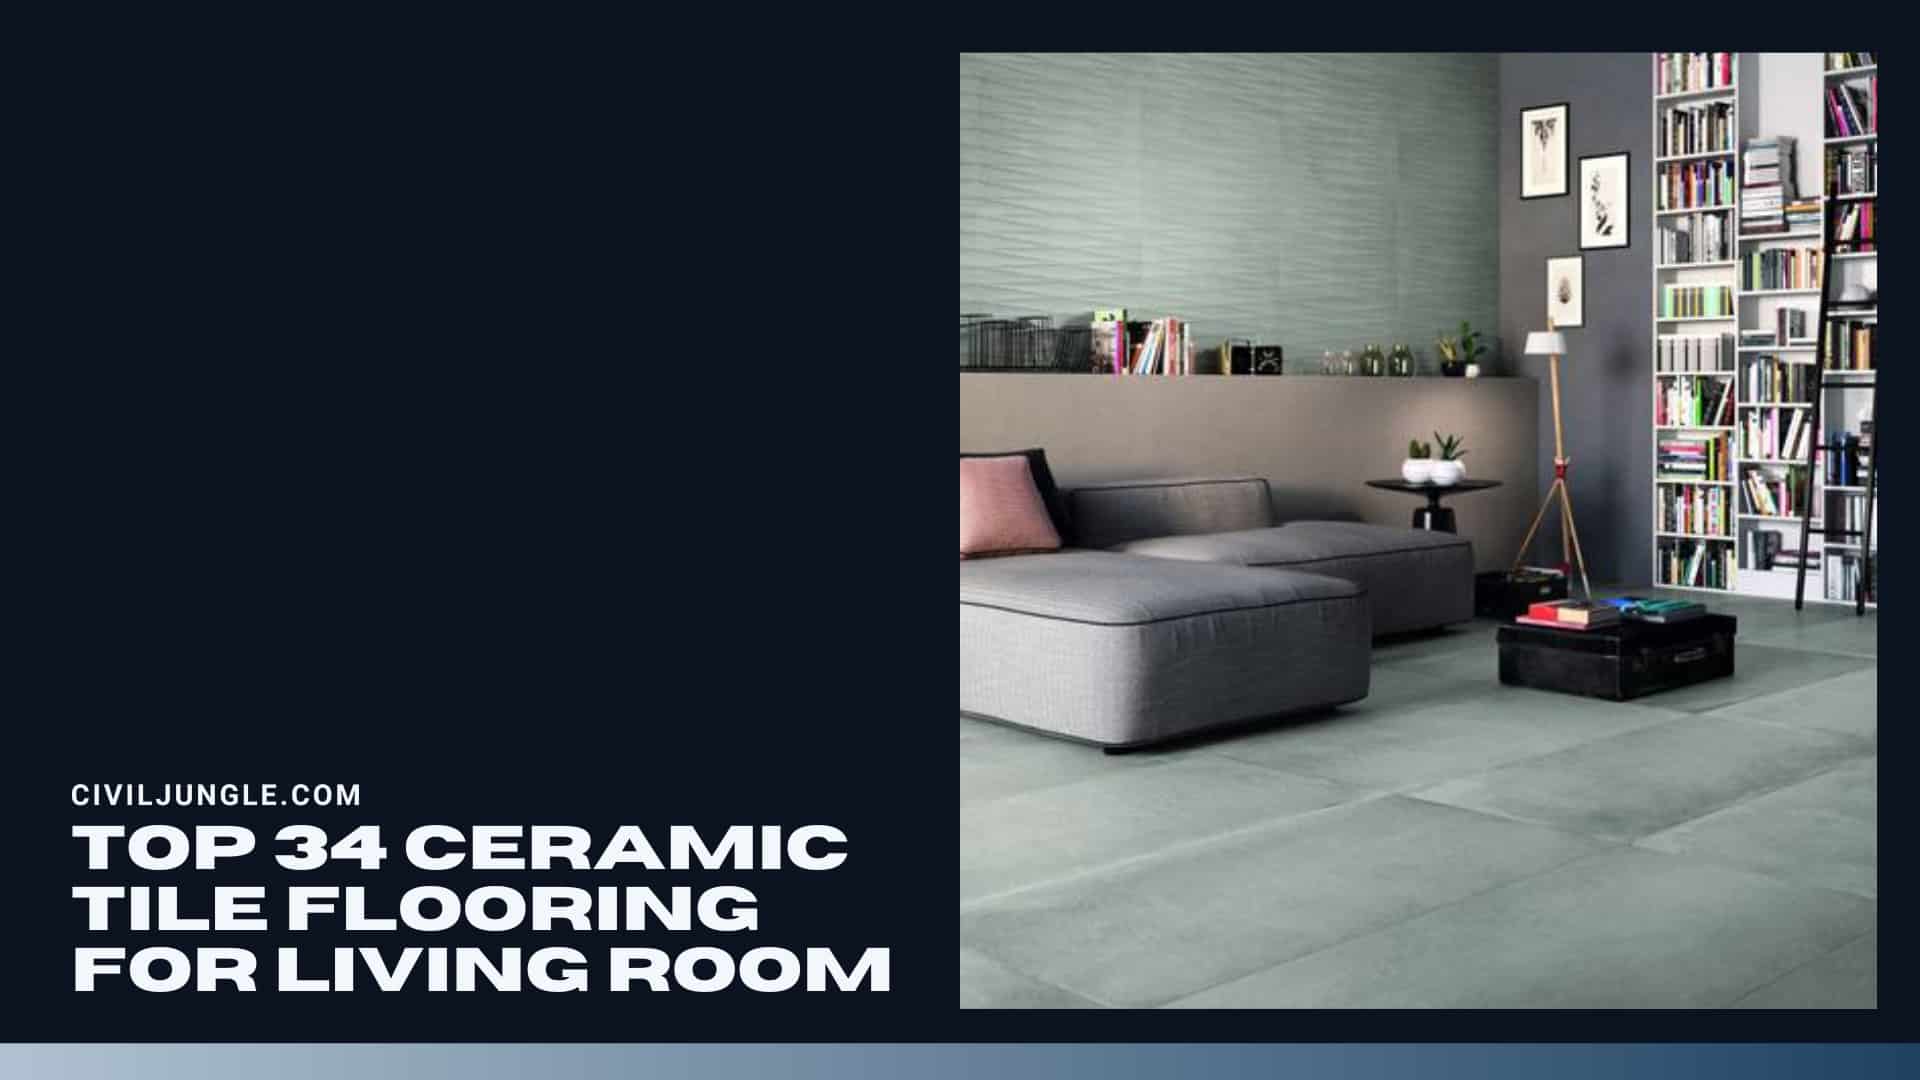 Top 34 Ceramic Tile Flooring for Living Room